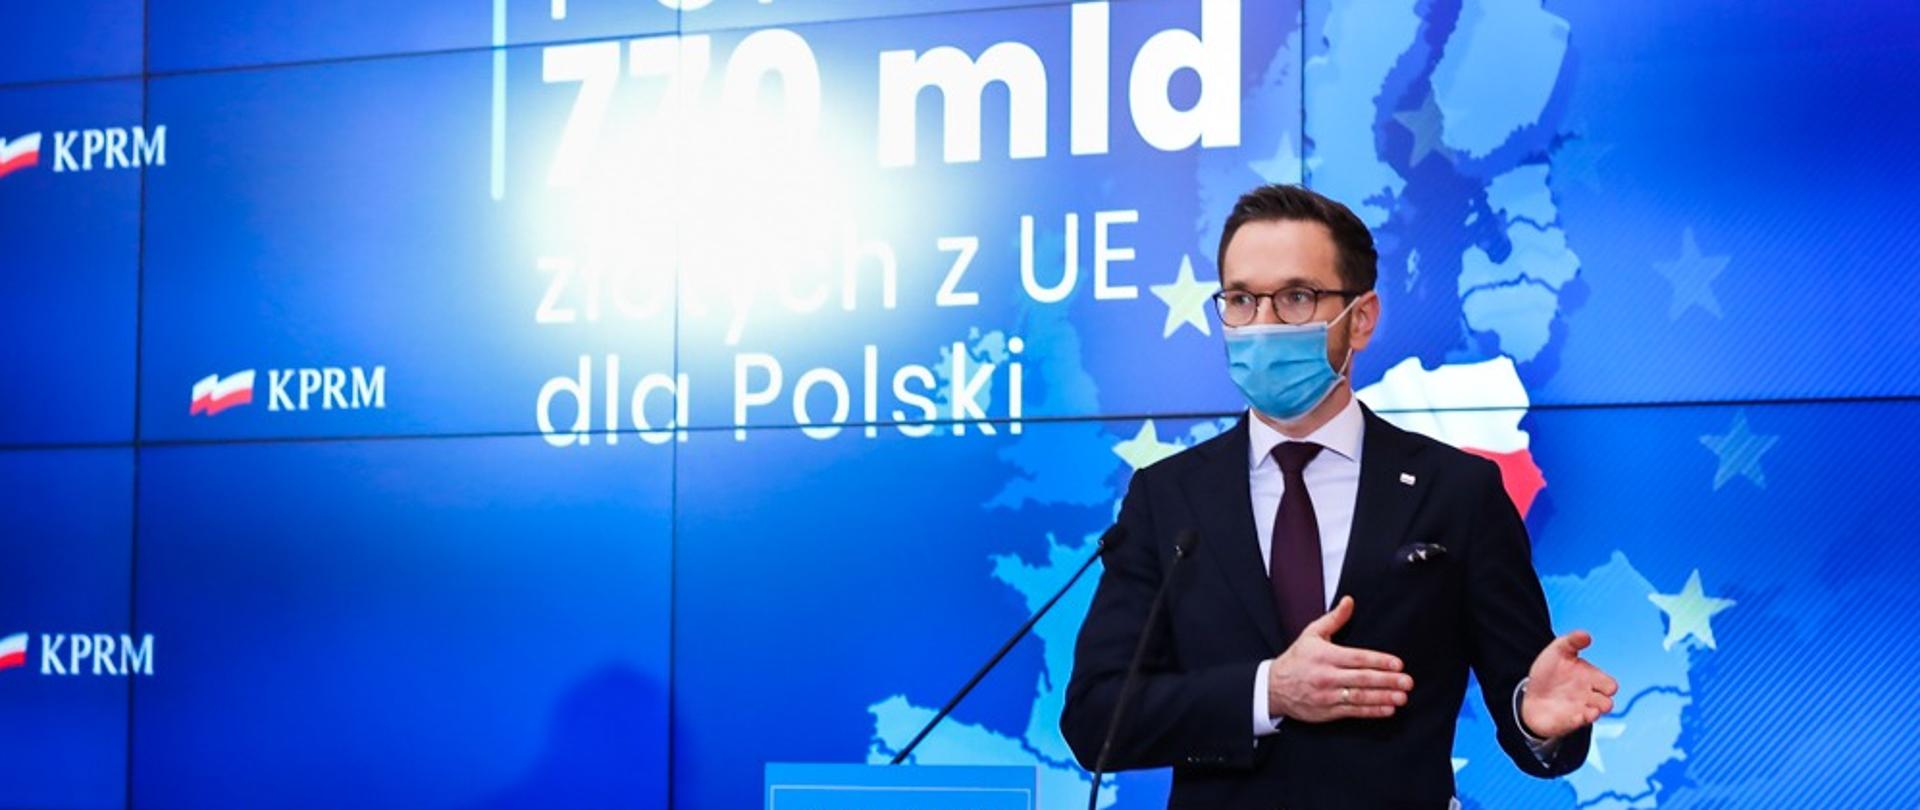 Wiceminister Waldemar Buda stoi w maseczce przed mównicą. Za plecami ekran z napisem: "Ponad 770 mld złotych z UE dla Polski". 